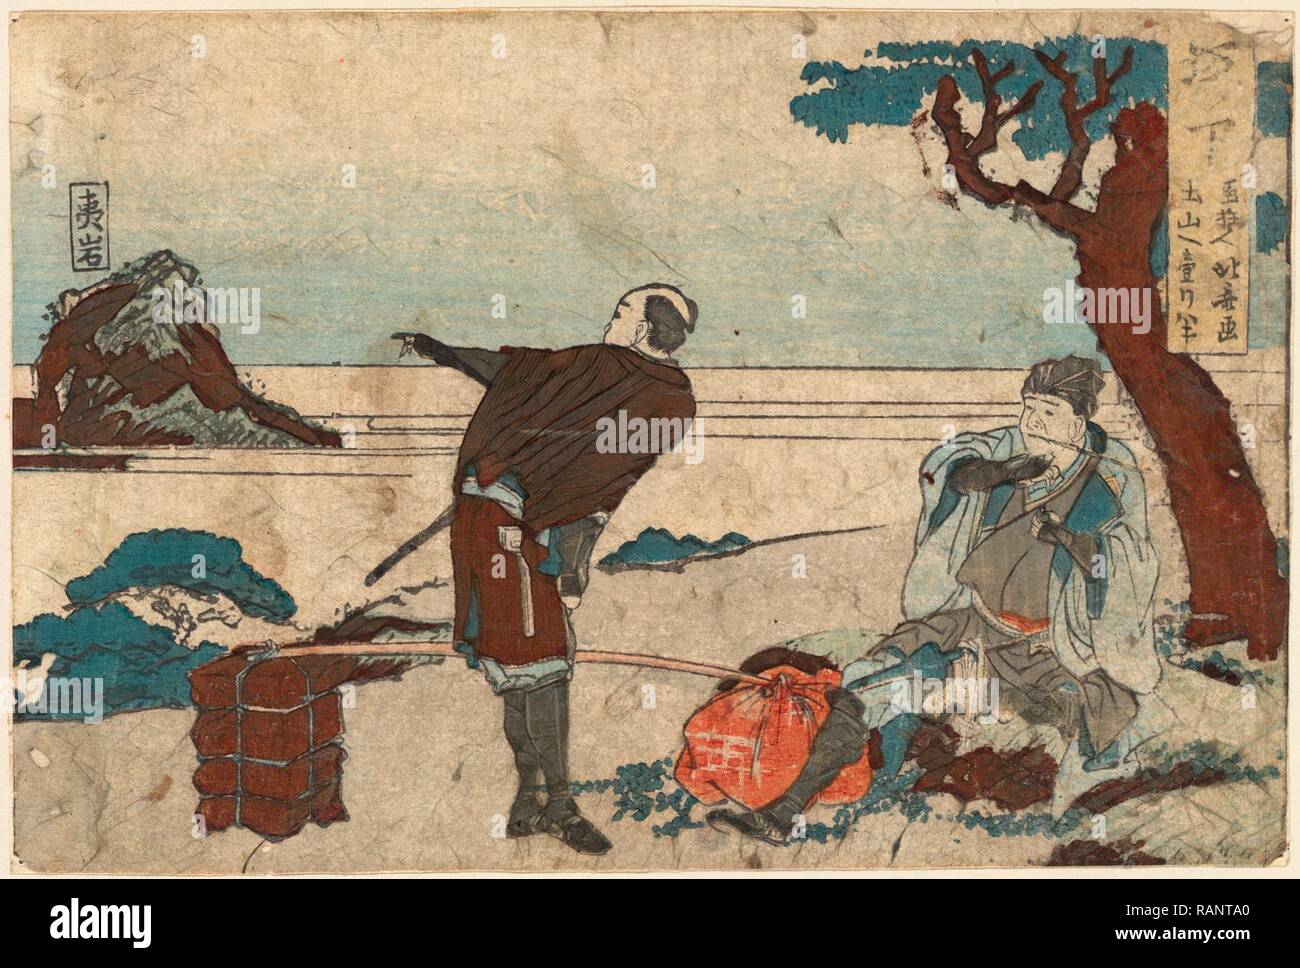 Sakanoshita, Katsushika 1804., 1 Drucken: Holzschnitt, Farbe, 11,2 X 16,6, Drucken zeigt einen Mann, Rauchen einer Pfeife, und ein Portier neuerfundene Stockfoto